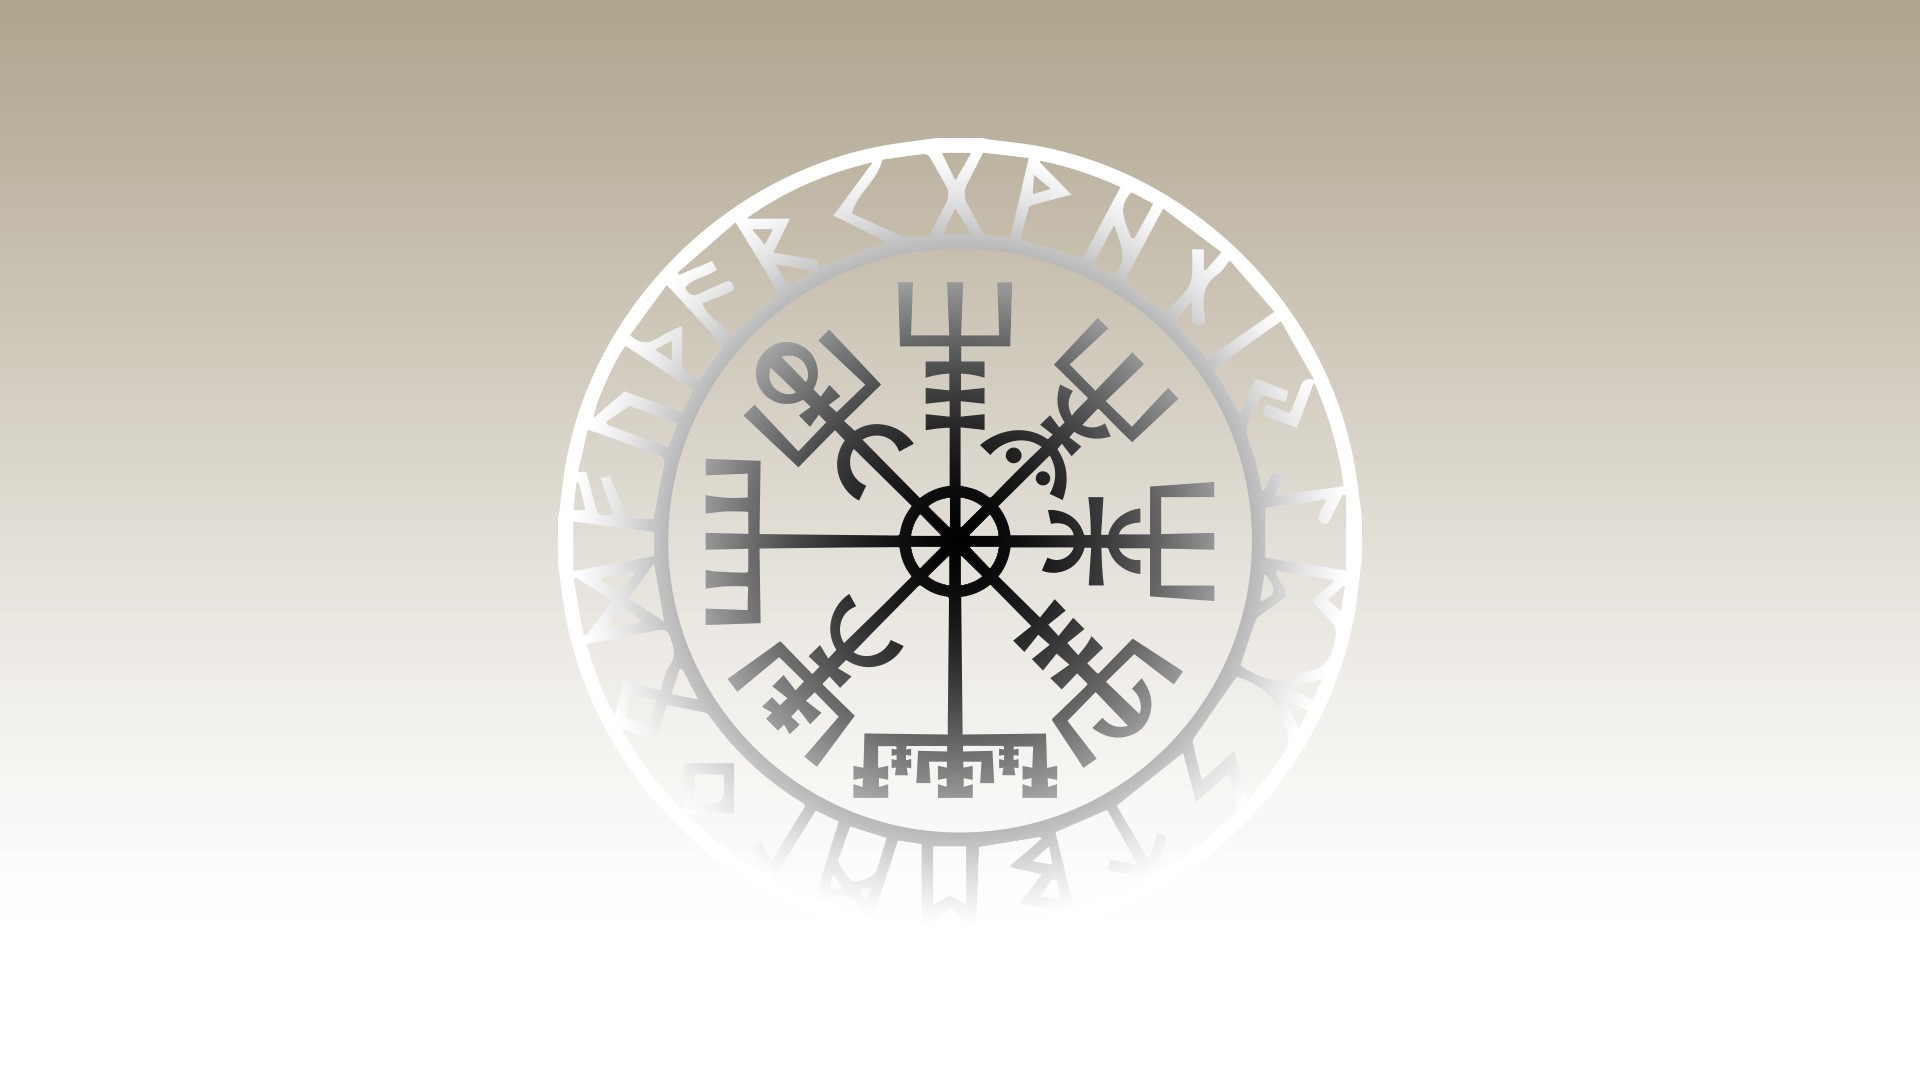 General 1920x1080 Vikings minimalism runes simple background